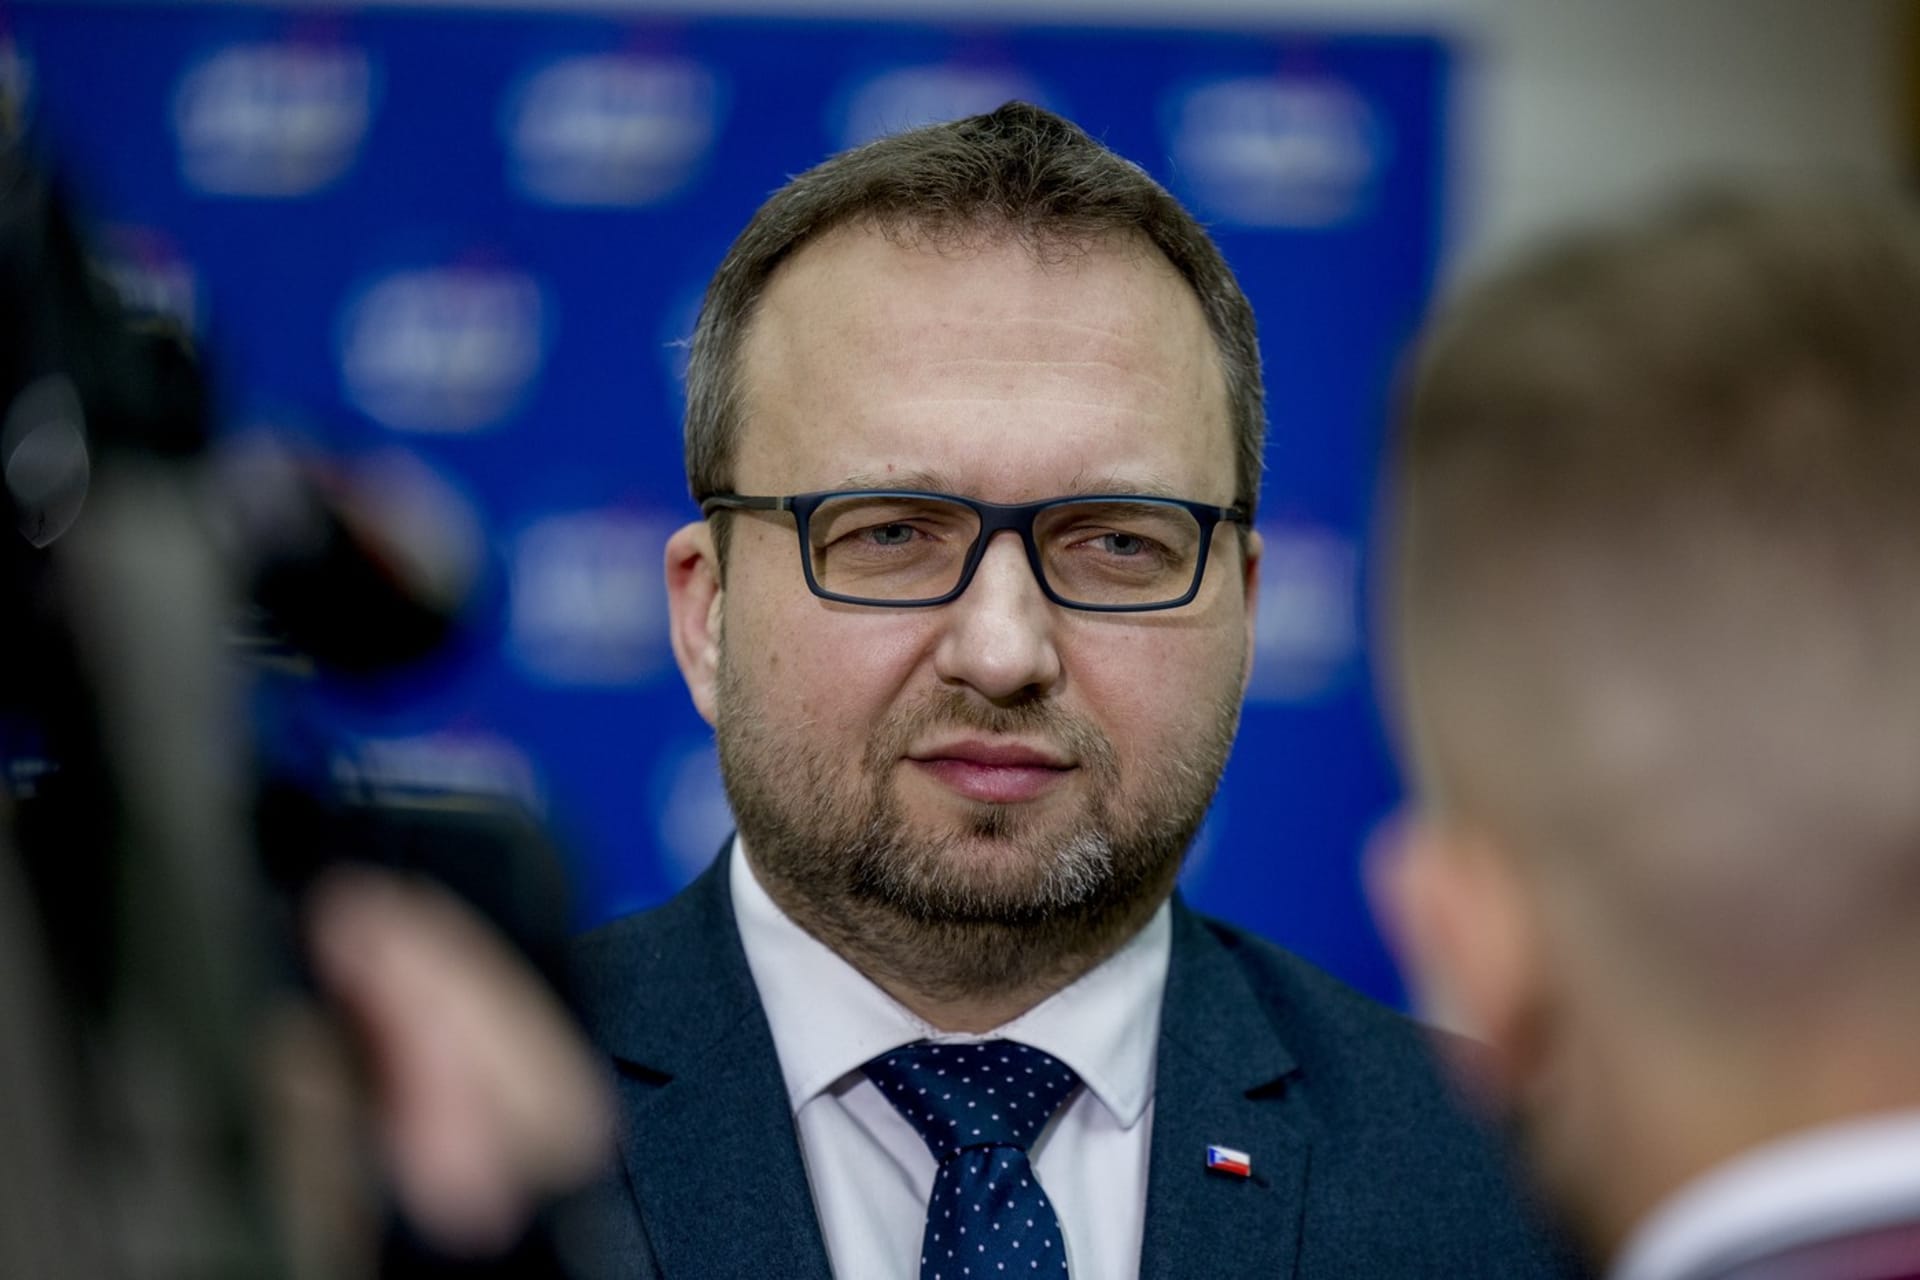 Vytvářet teď druhý pilíř a dělat zásadní změny není na pořadu dne, míní ministr práce Marian Jurečka (KDU-ČSL).